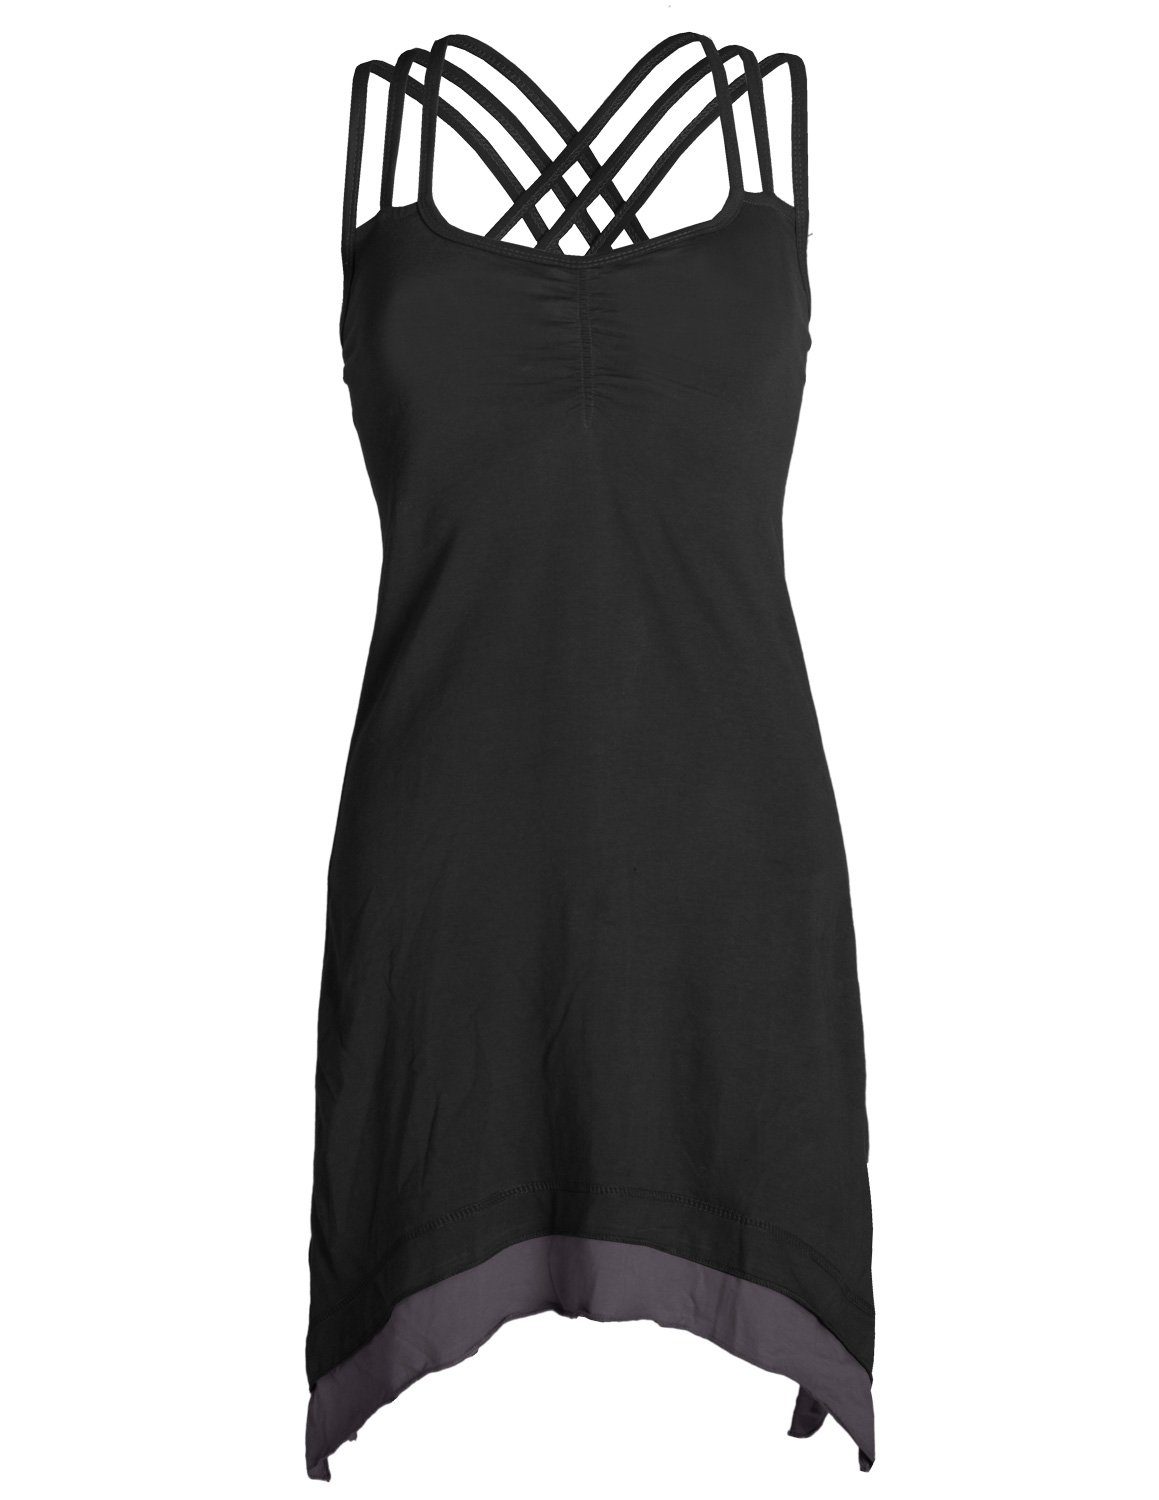 Vishes Sommerkleid Lagenlook Trägerkleid Organic Cotton mit Zipfeln Elfen, Hippie, Boho Style schwarz